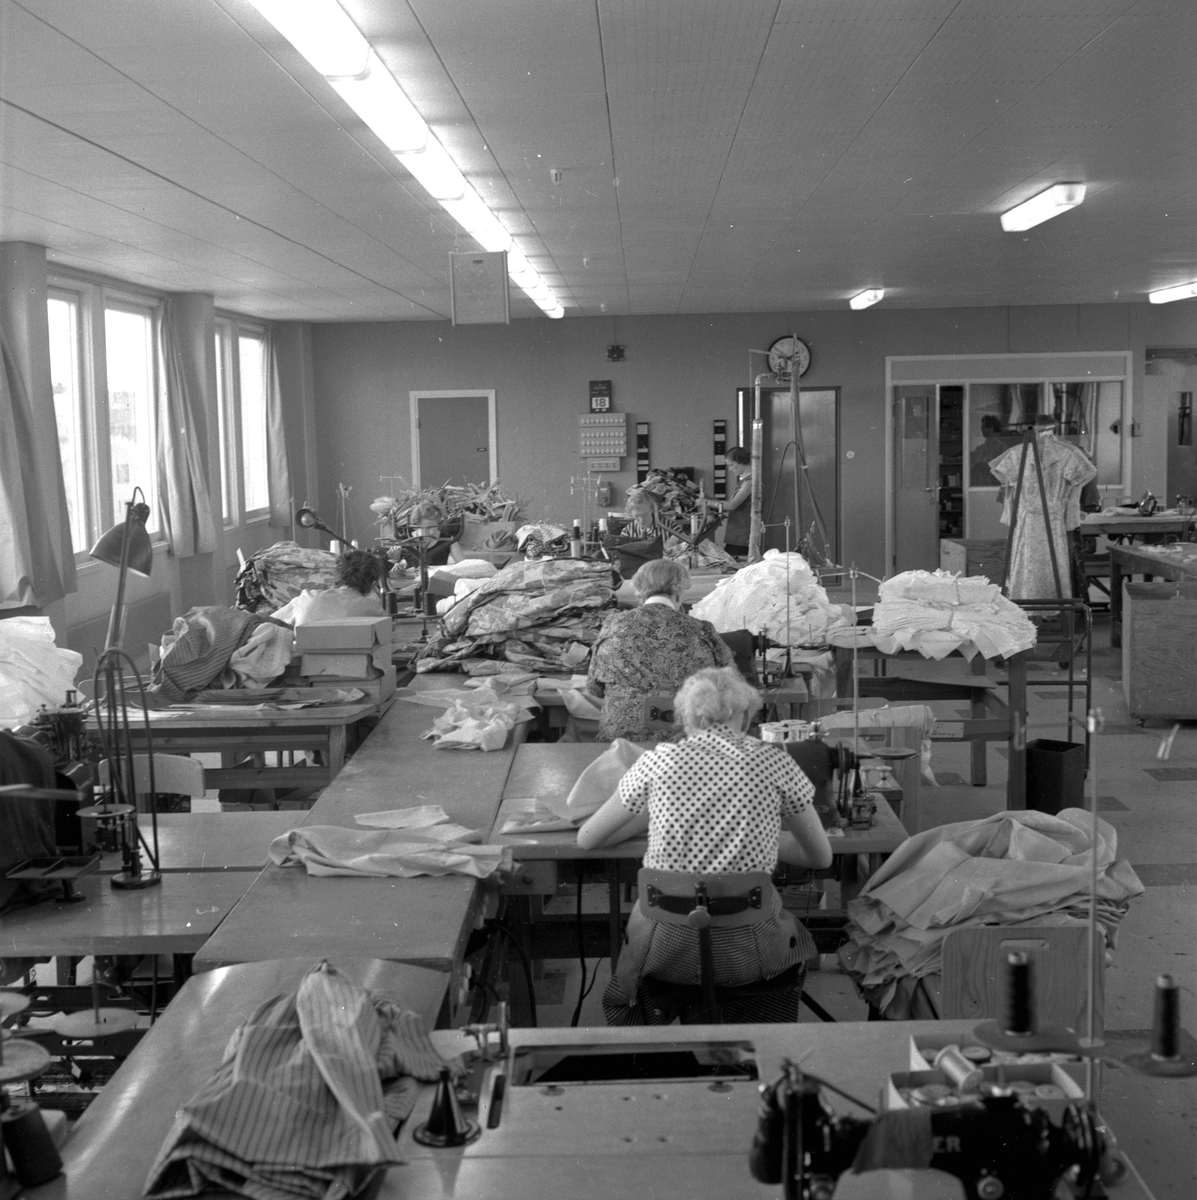 Härolds invigning.
Maj 1956.